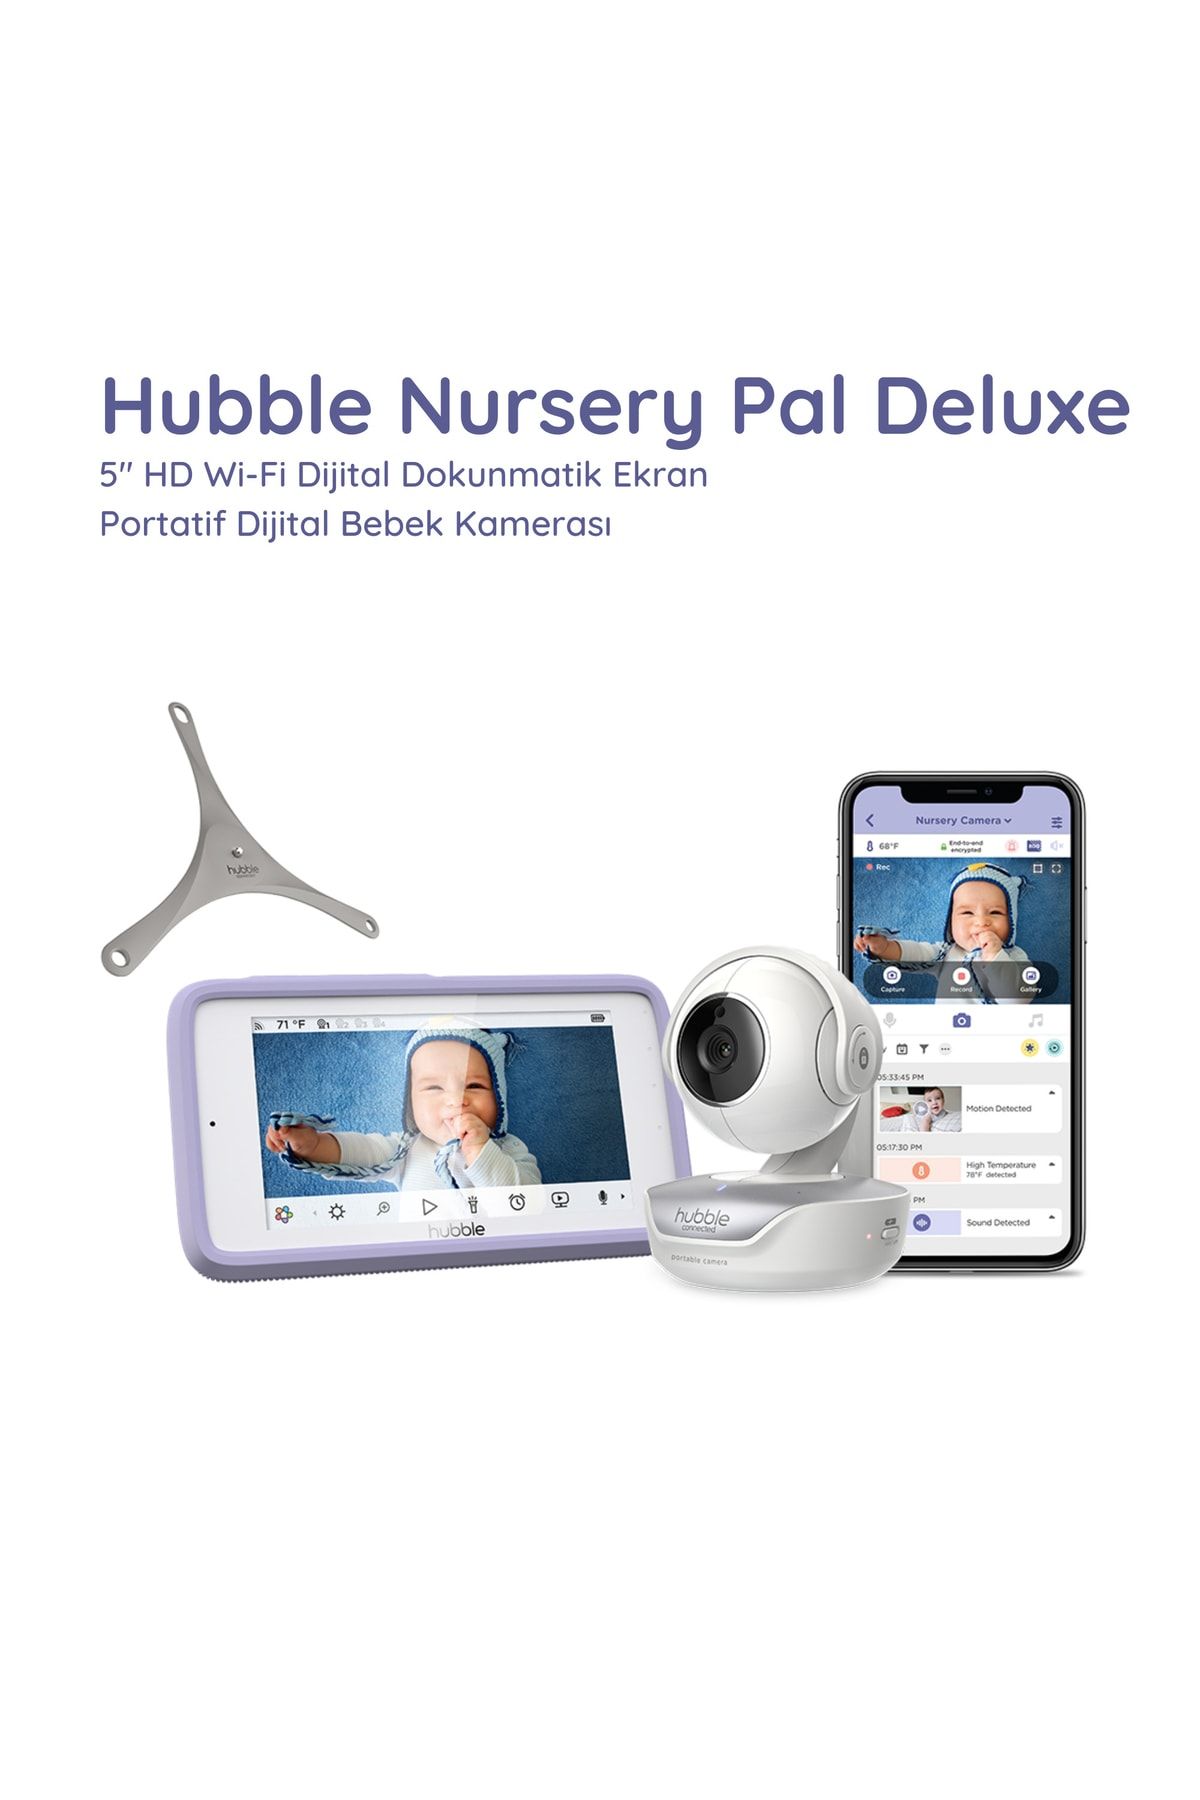 Hubble Nursery Pal Deluxe 5” Hd Wi-fi Dokunmatik Ekran Portatif Dijital Bebek Kamerası